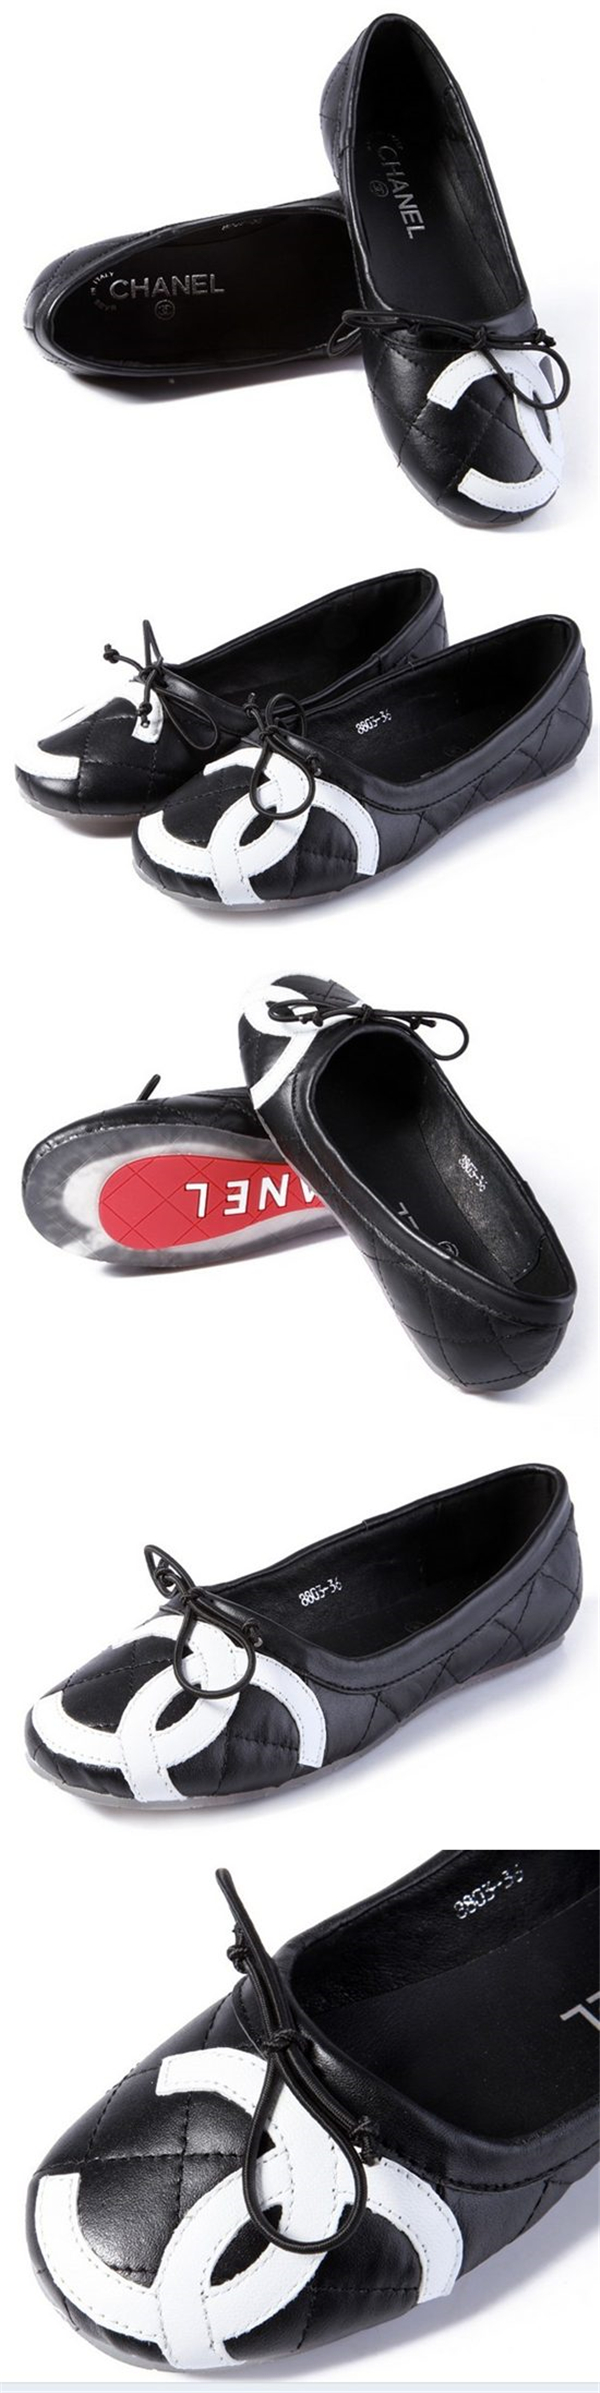 シャネル靴 12426 スーパーコピー